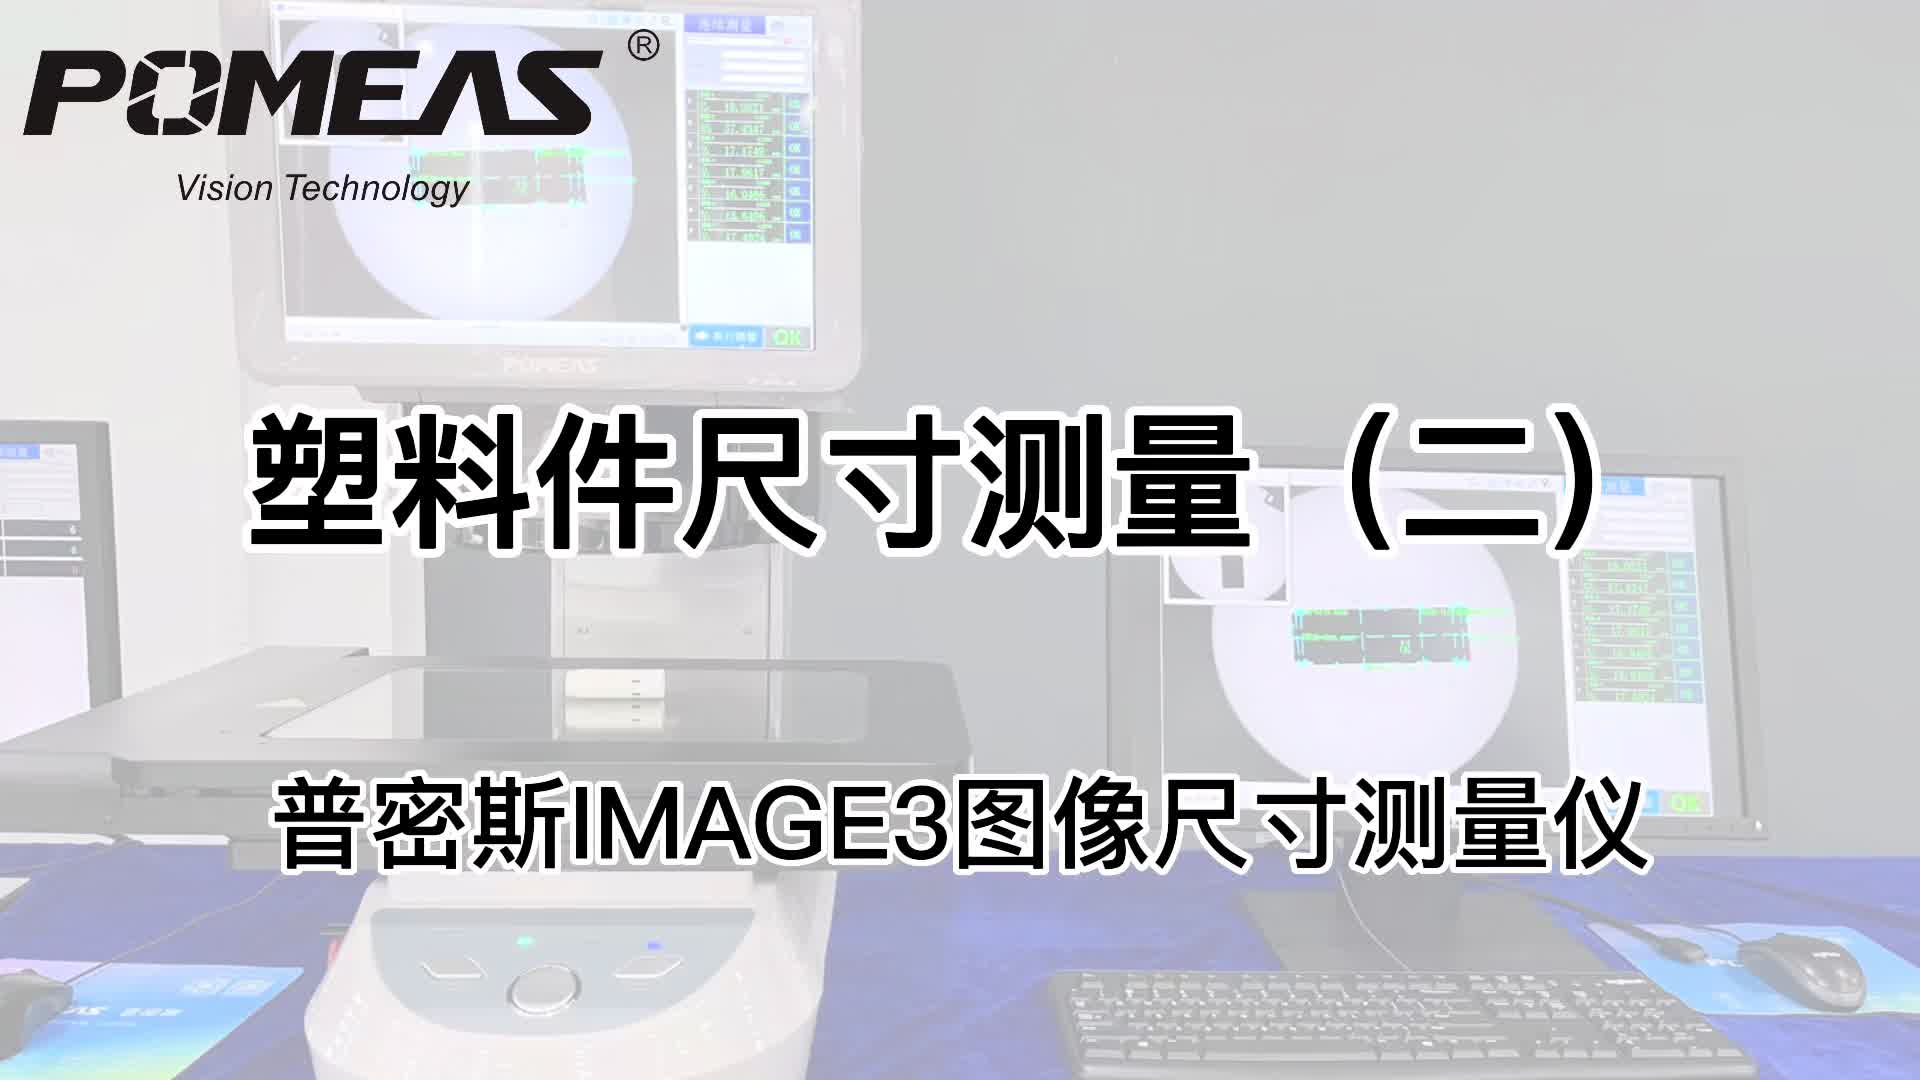 IMAGE3图像测量仪应用|塑料件外管尺寸测量#光学仪器#闪测仪#一键式测量仪#普密斯POMEAS# 